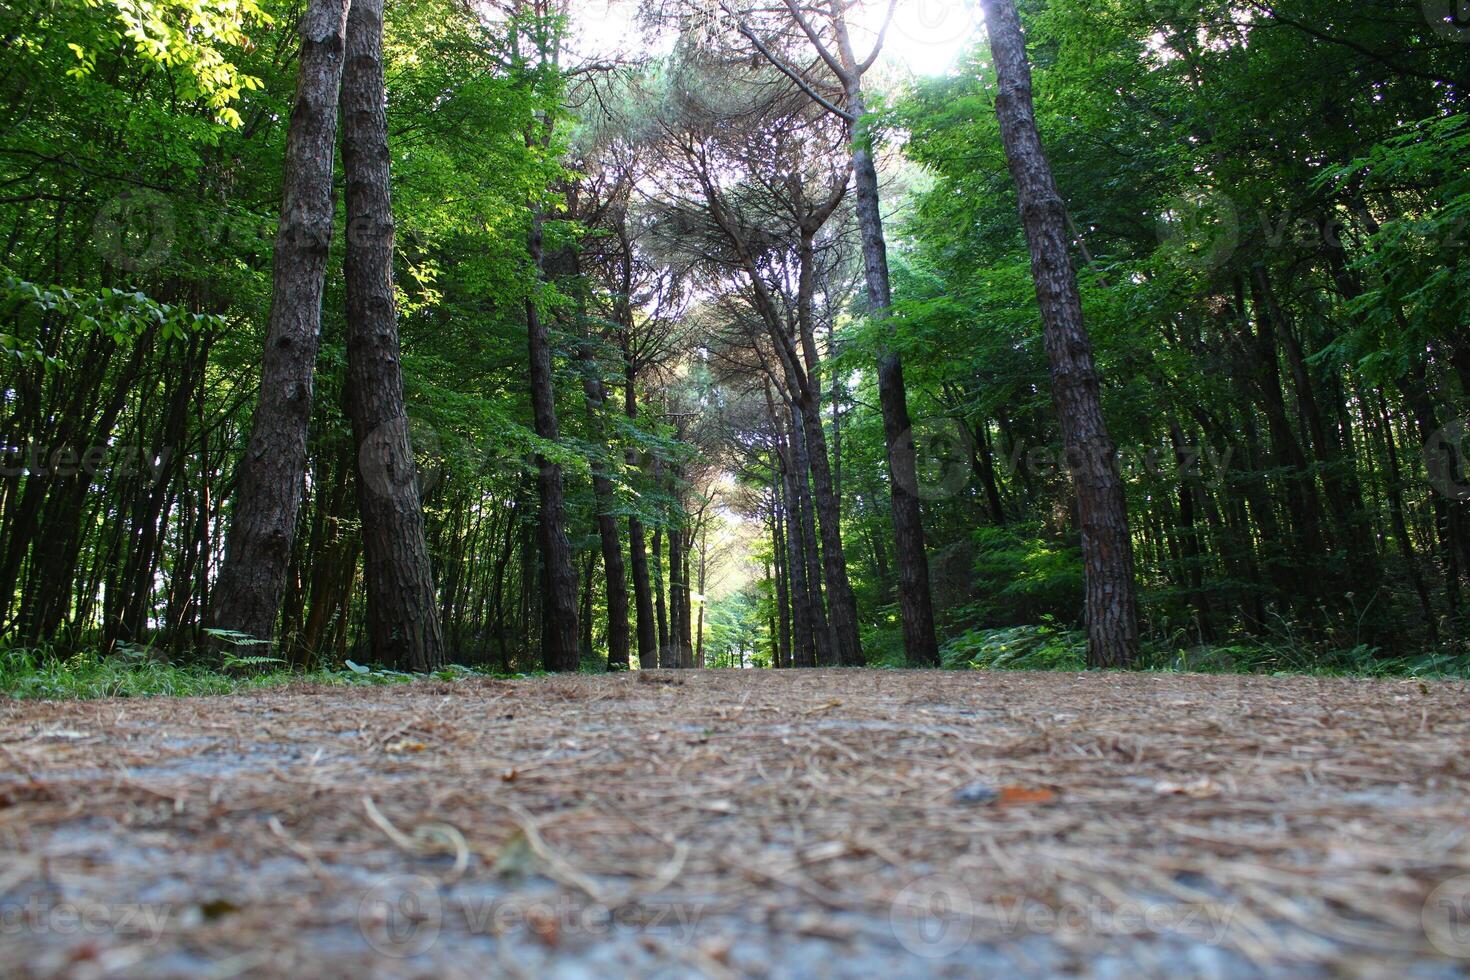 istanbul belgrad skog. smuts väg mellan tall träd. endemisk tall träd foto